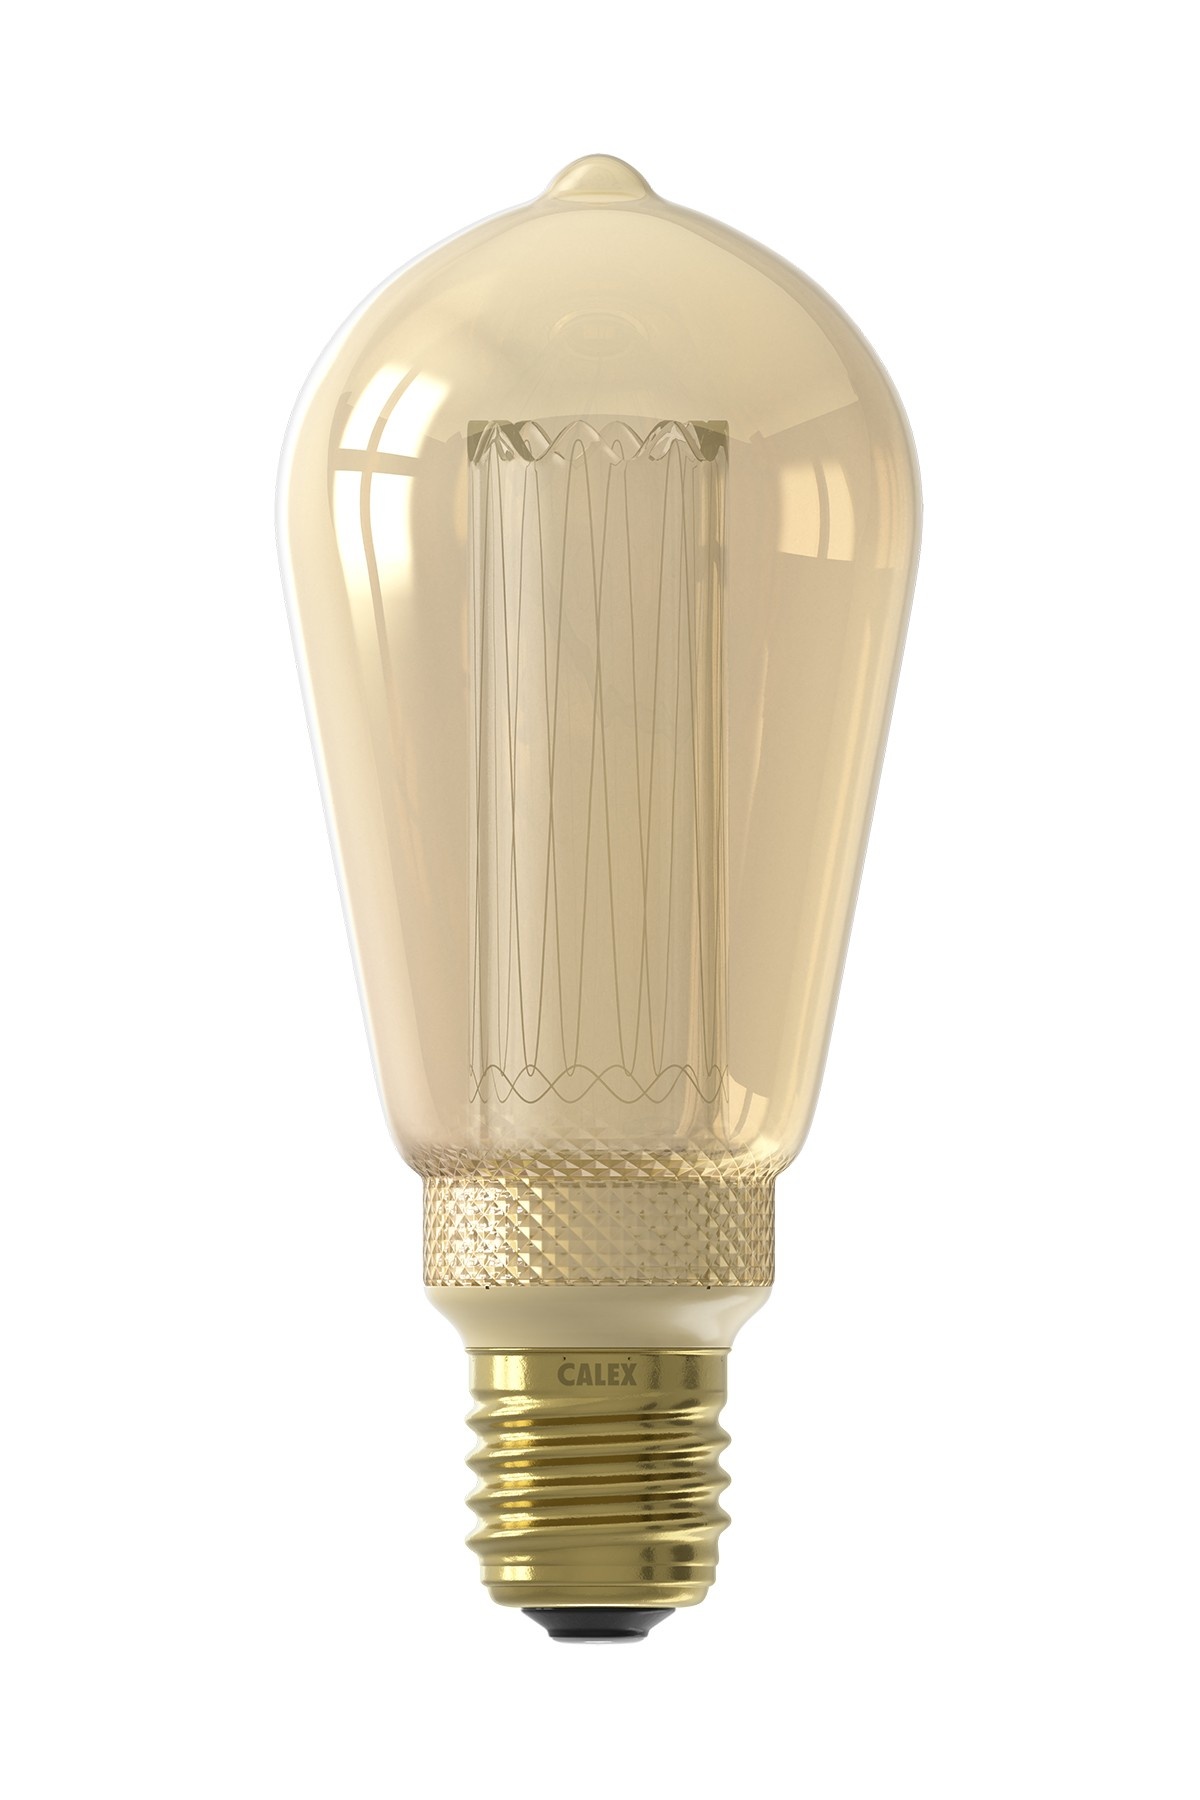 Seminarie Tirannie Verkeersopstopping Calex Rustiek LED Lamp - E27 - 100 Lm - Gold - Lightexpert.nl